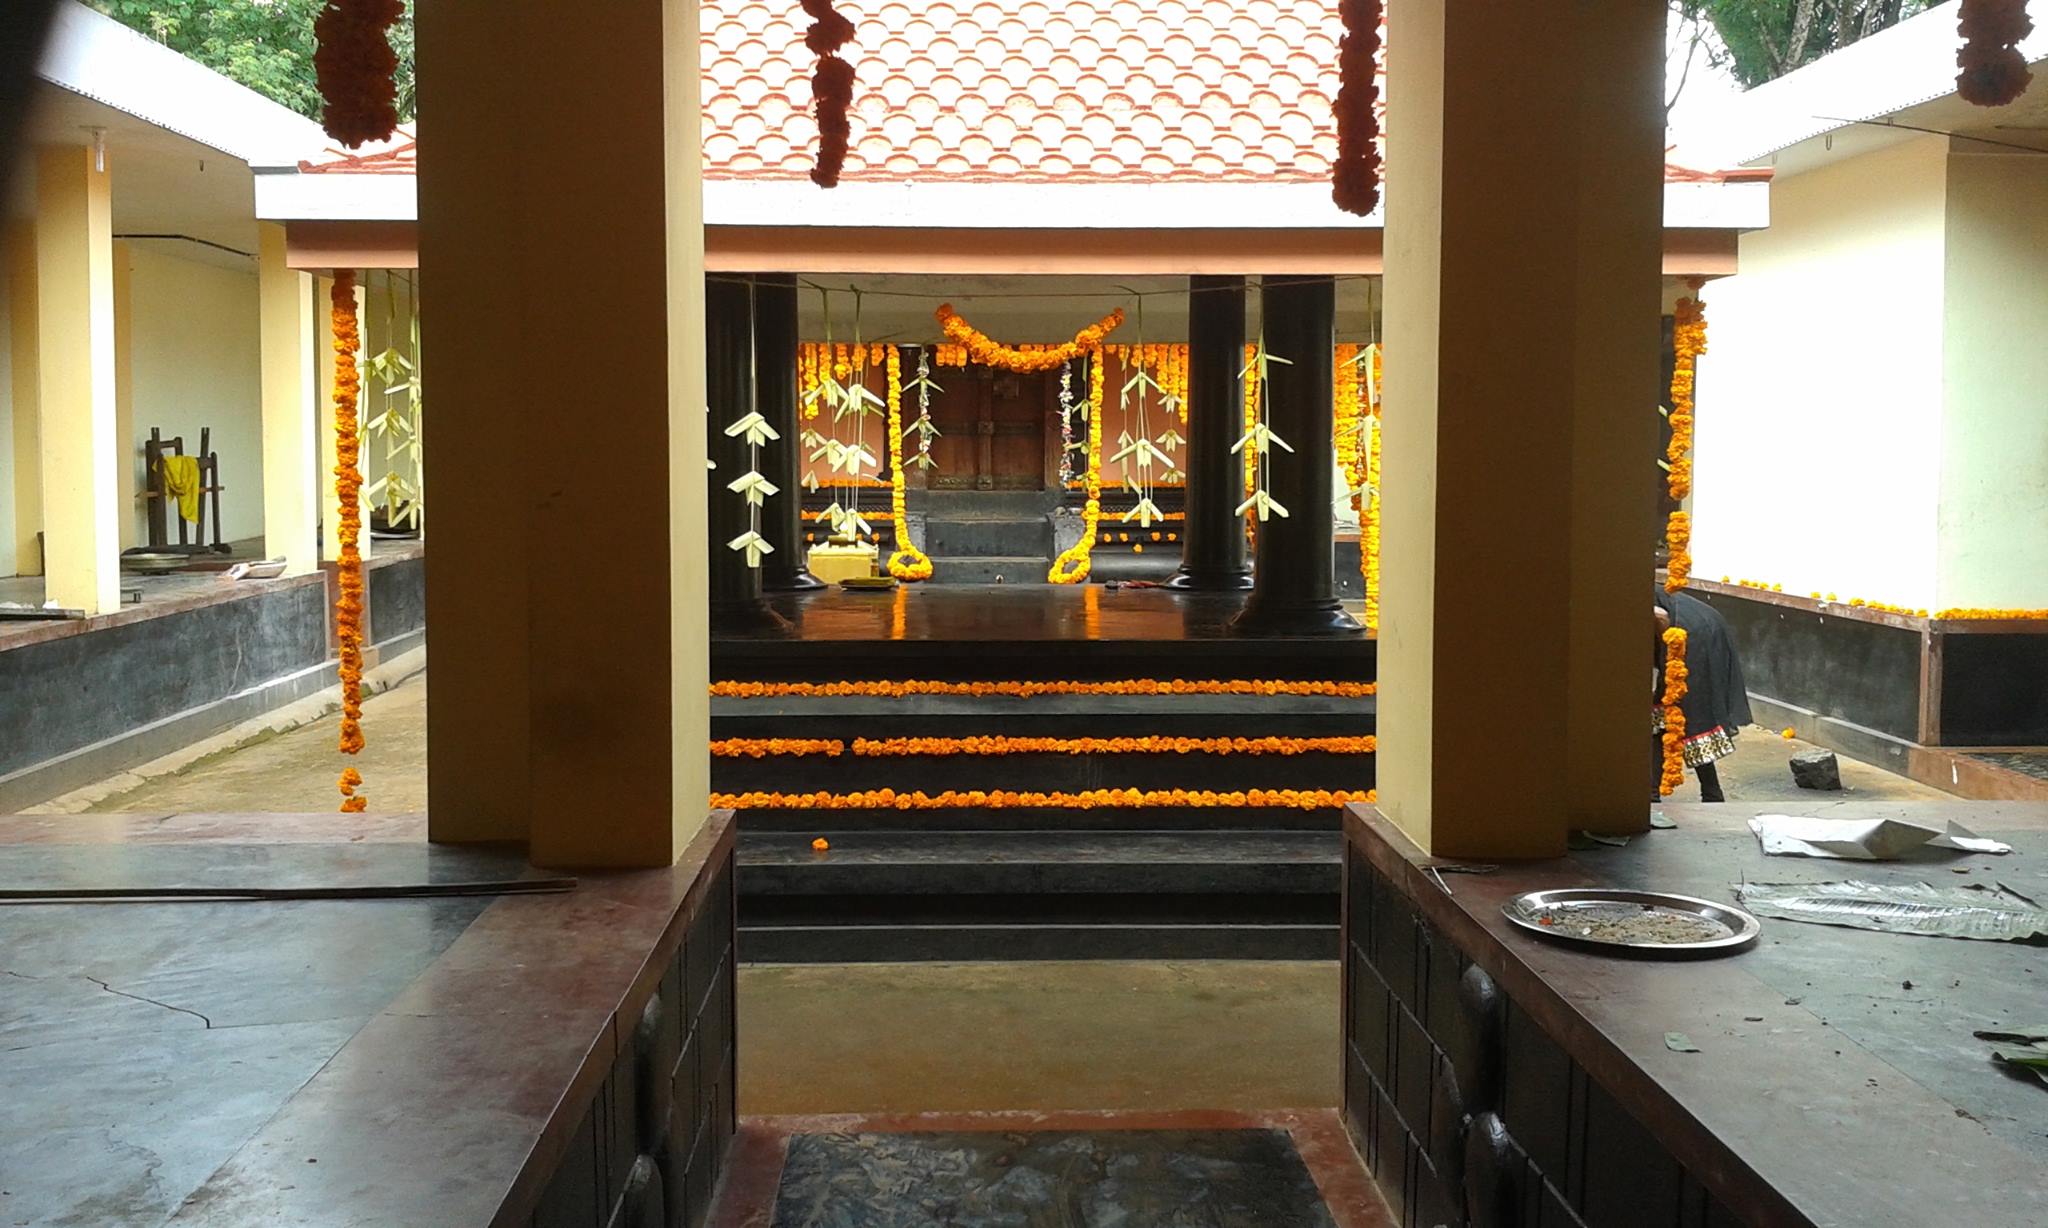 Vattathani Sree Mahavishnu Temple